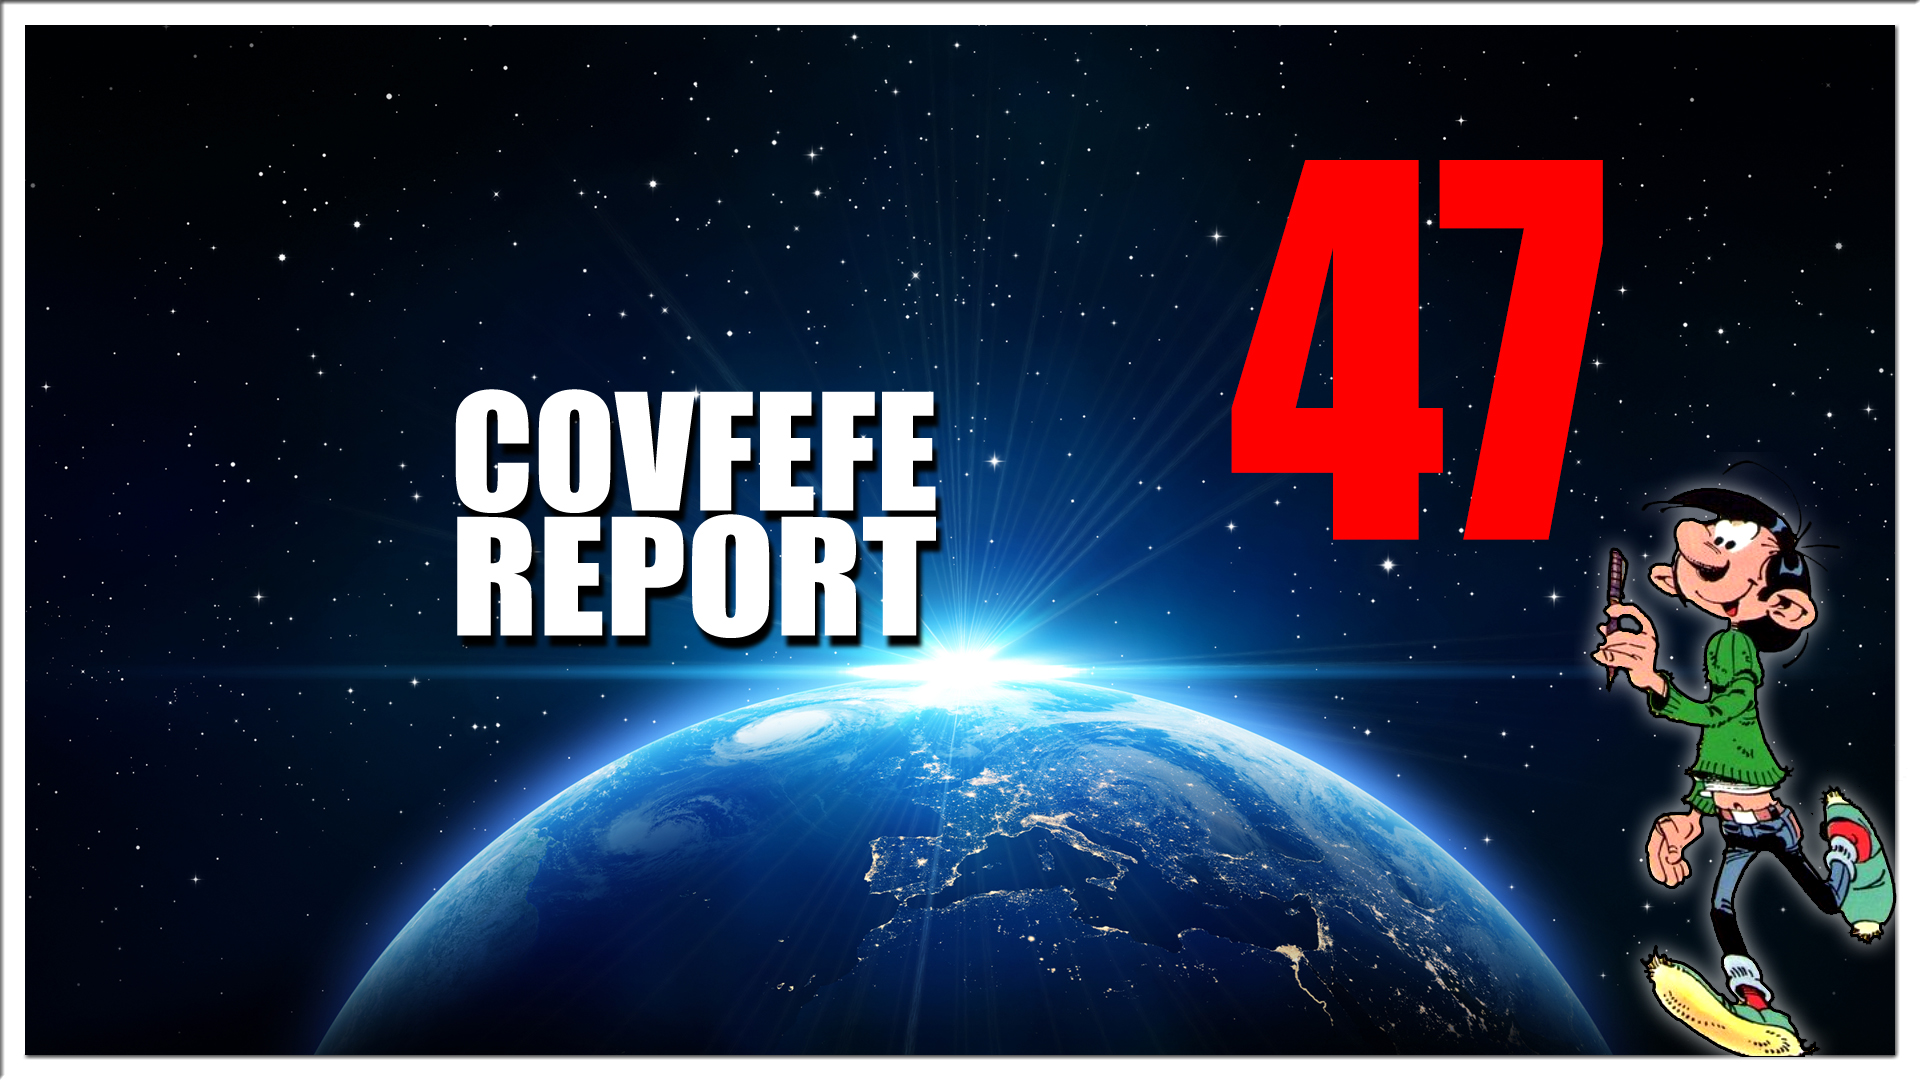 Covfefe Report 47. 8Kun back online, Jimmy Carter, Oprah Winfrey